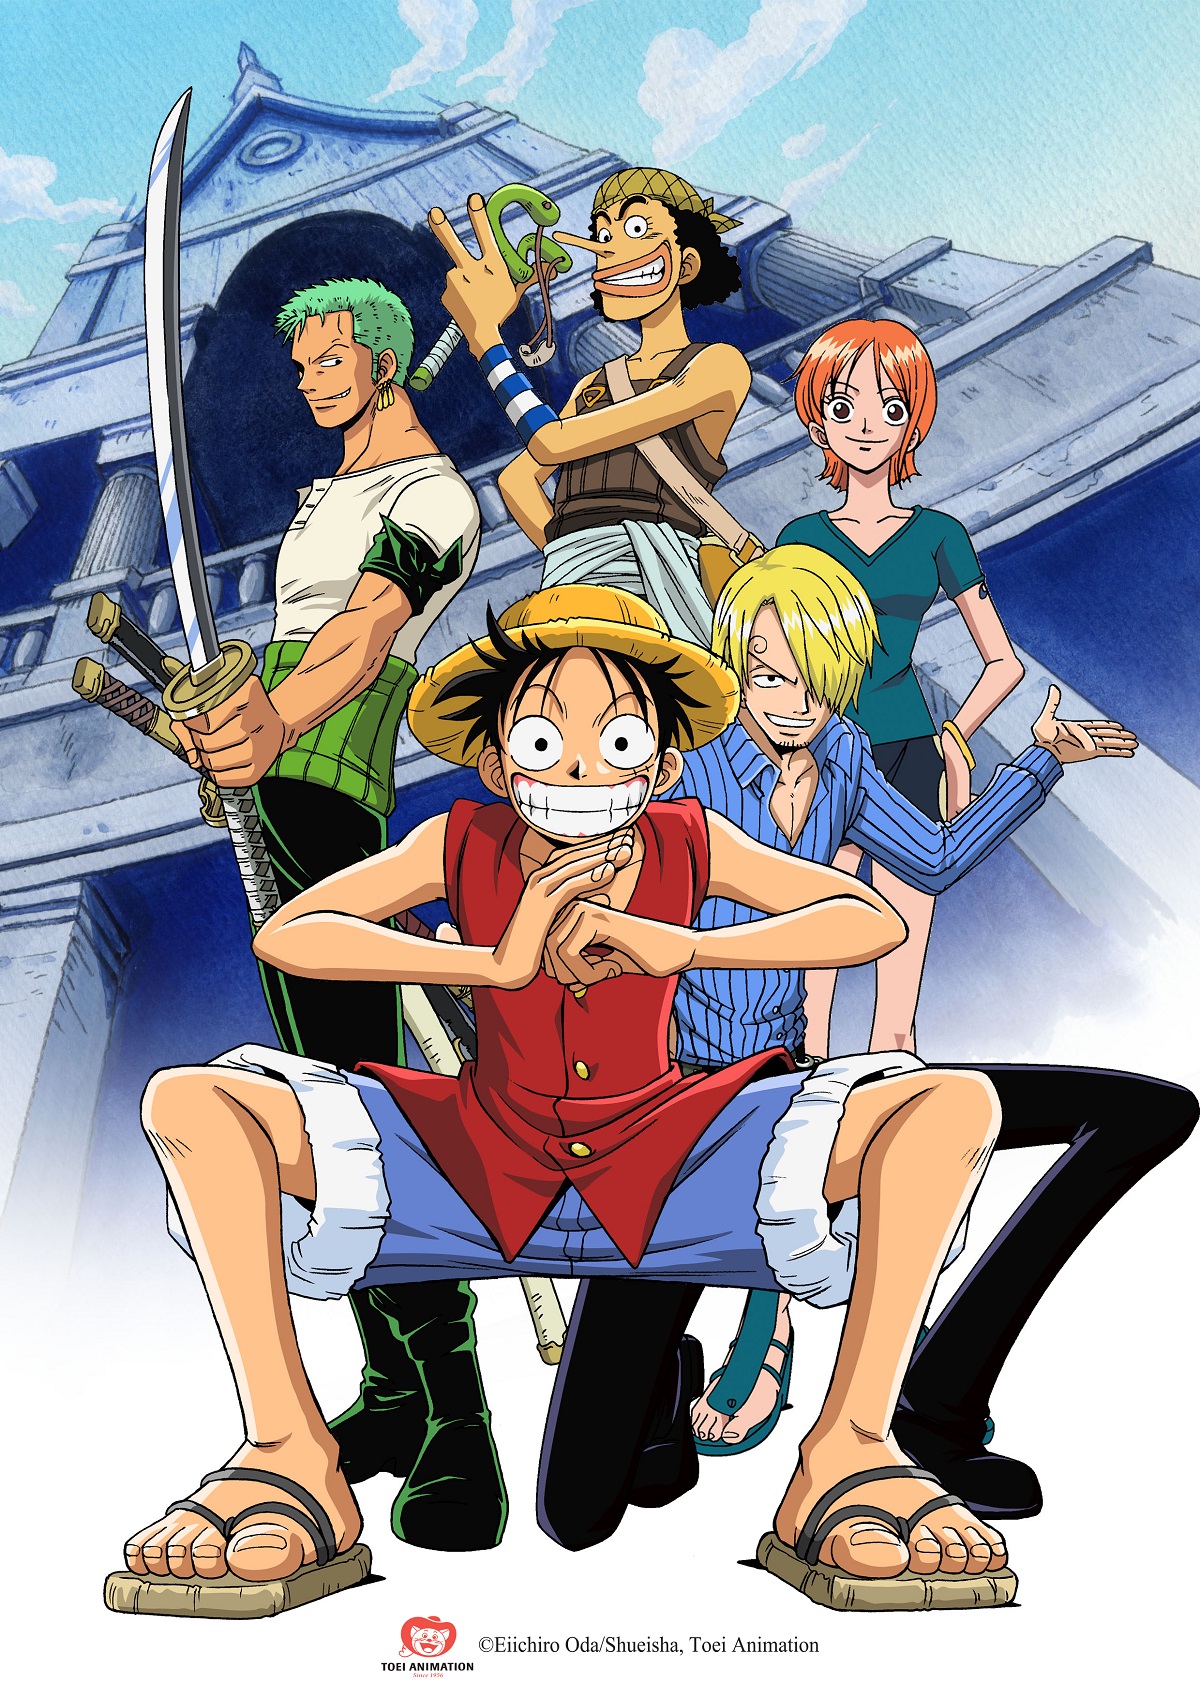 One Piece không chỉ là một bộ truyện tranh, mà còn là một nơi để tất cả khán giả Việt Nam trở nên thân thiết và gần gũi với nhau. Đó là một cộng đồng yêu thích One Piece hùng mạnh và đang phát triển mạnh mẽ. Hãy tham gia cùng chúng tôi để cùng “tàu đánh trả thế giới này\